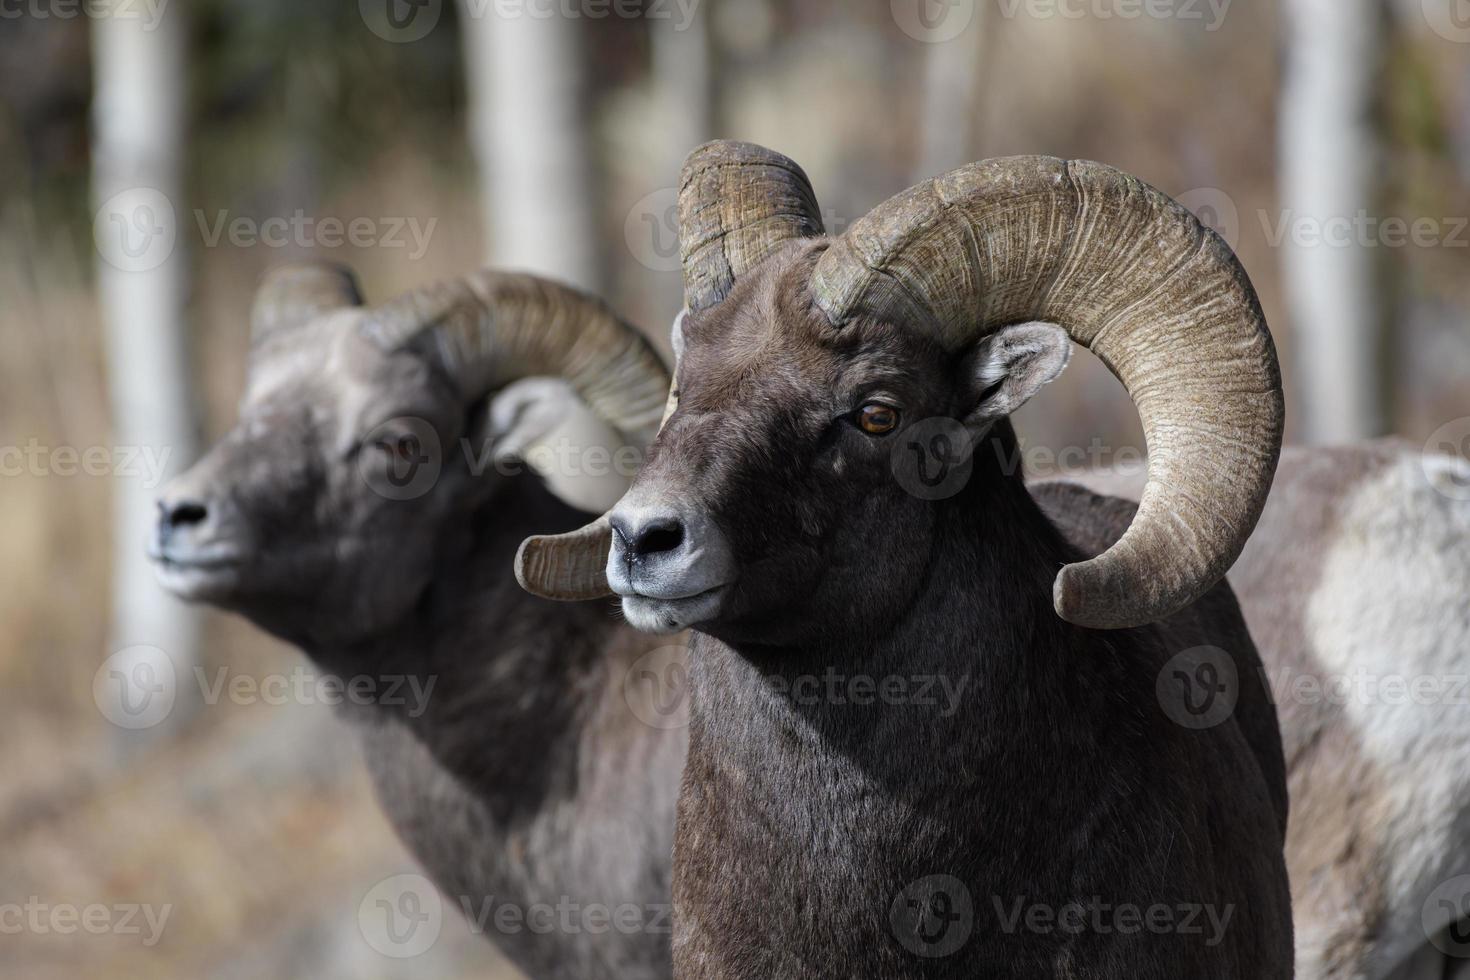 Colorado Rocky Mountain Bighorn Sheep photo